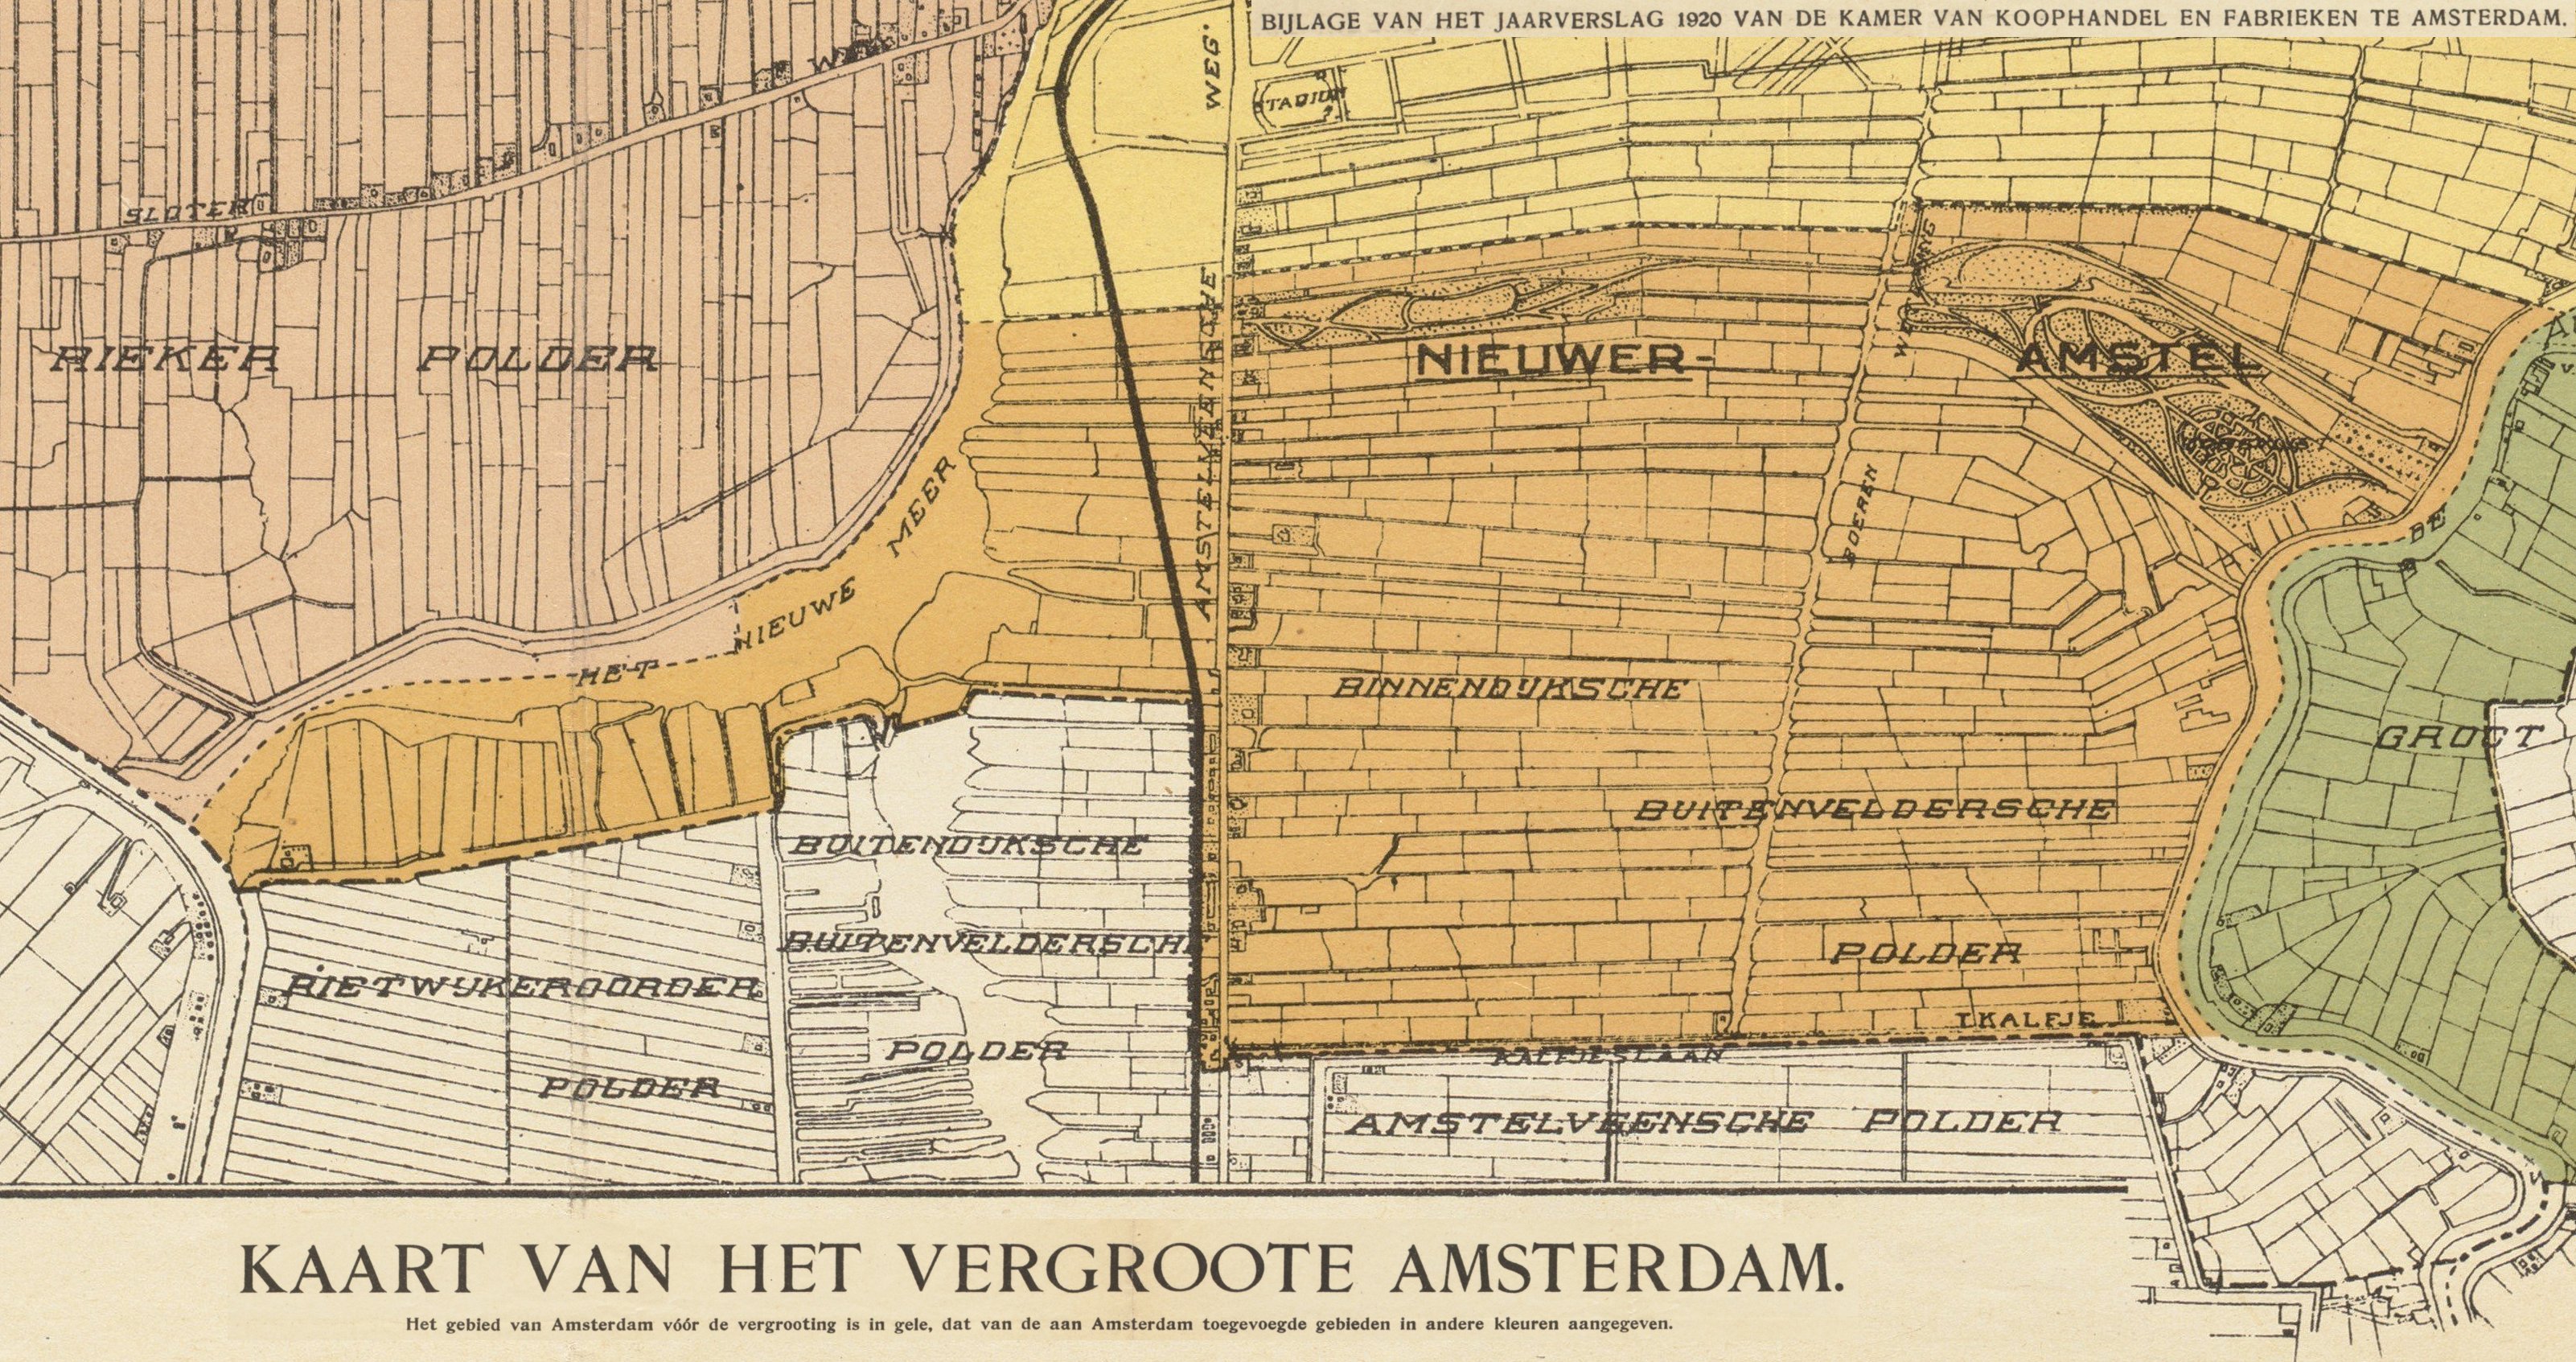 Kaart annexaties 1921 Amsterdam Nieuwer-Amstel (Stadsarchief Amsterdam)